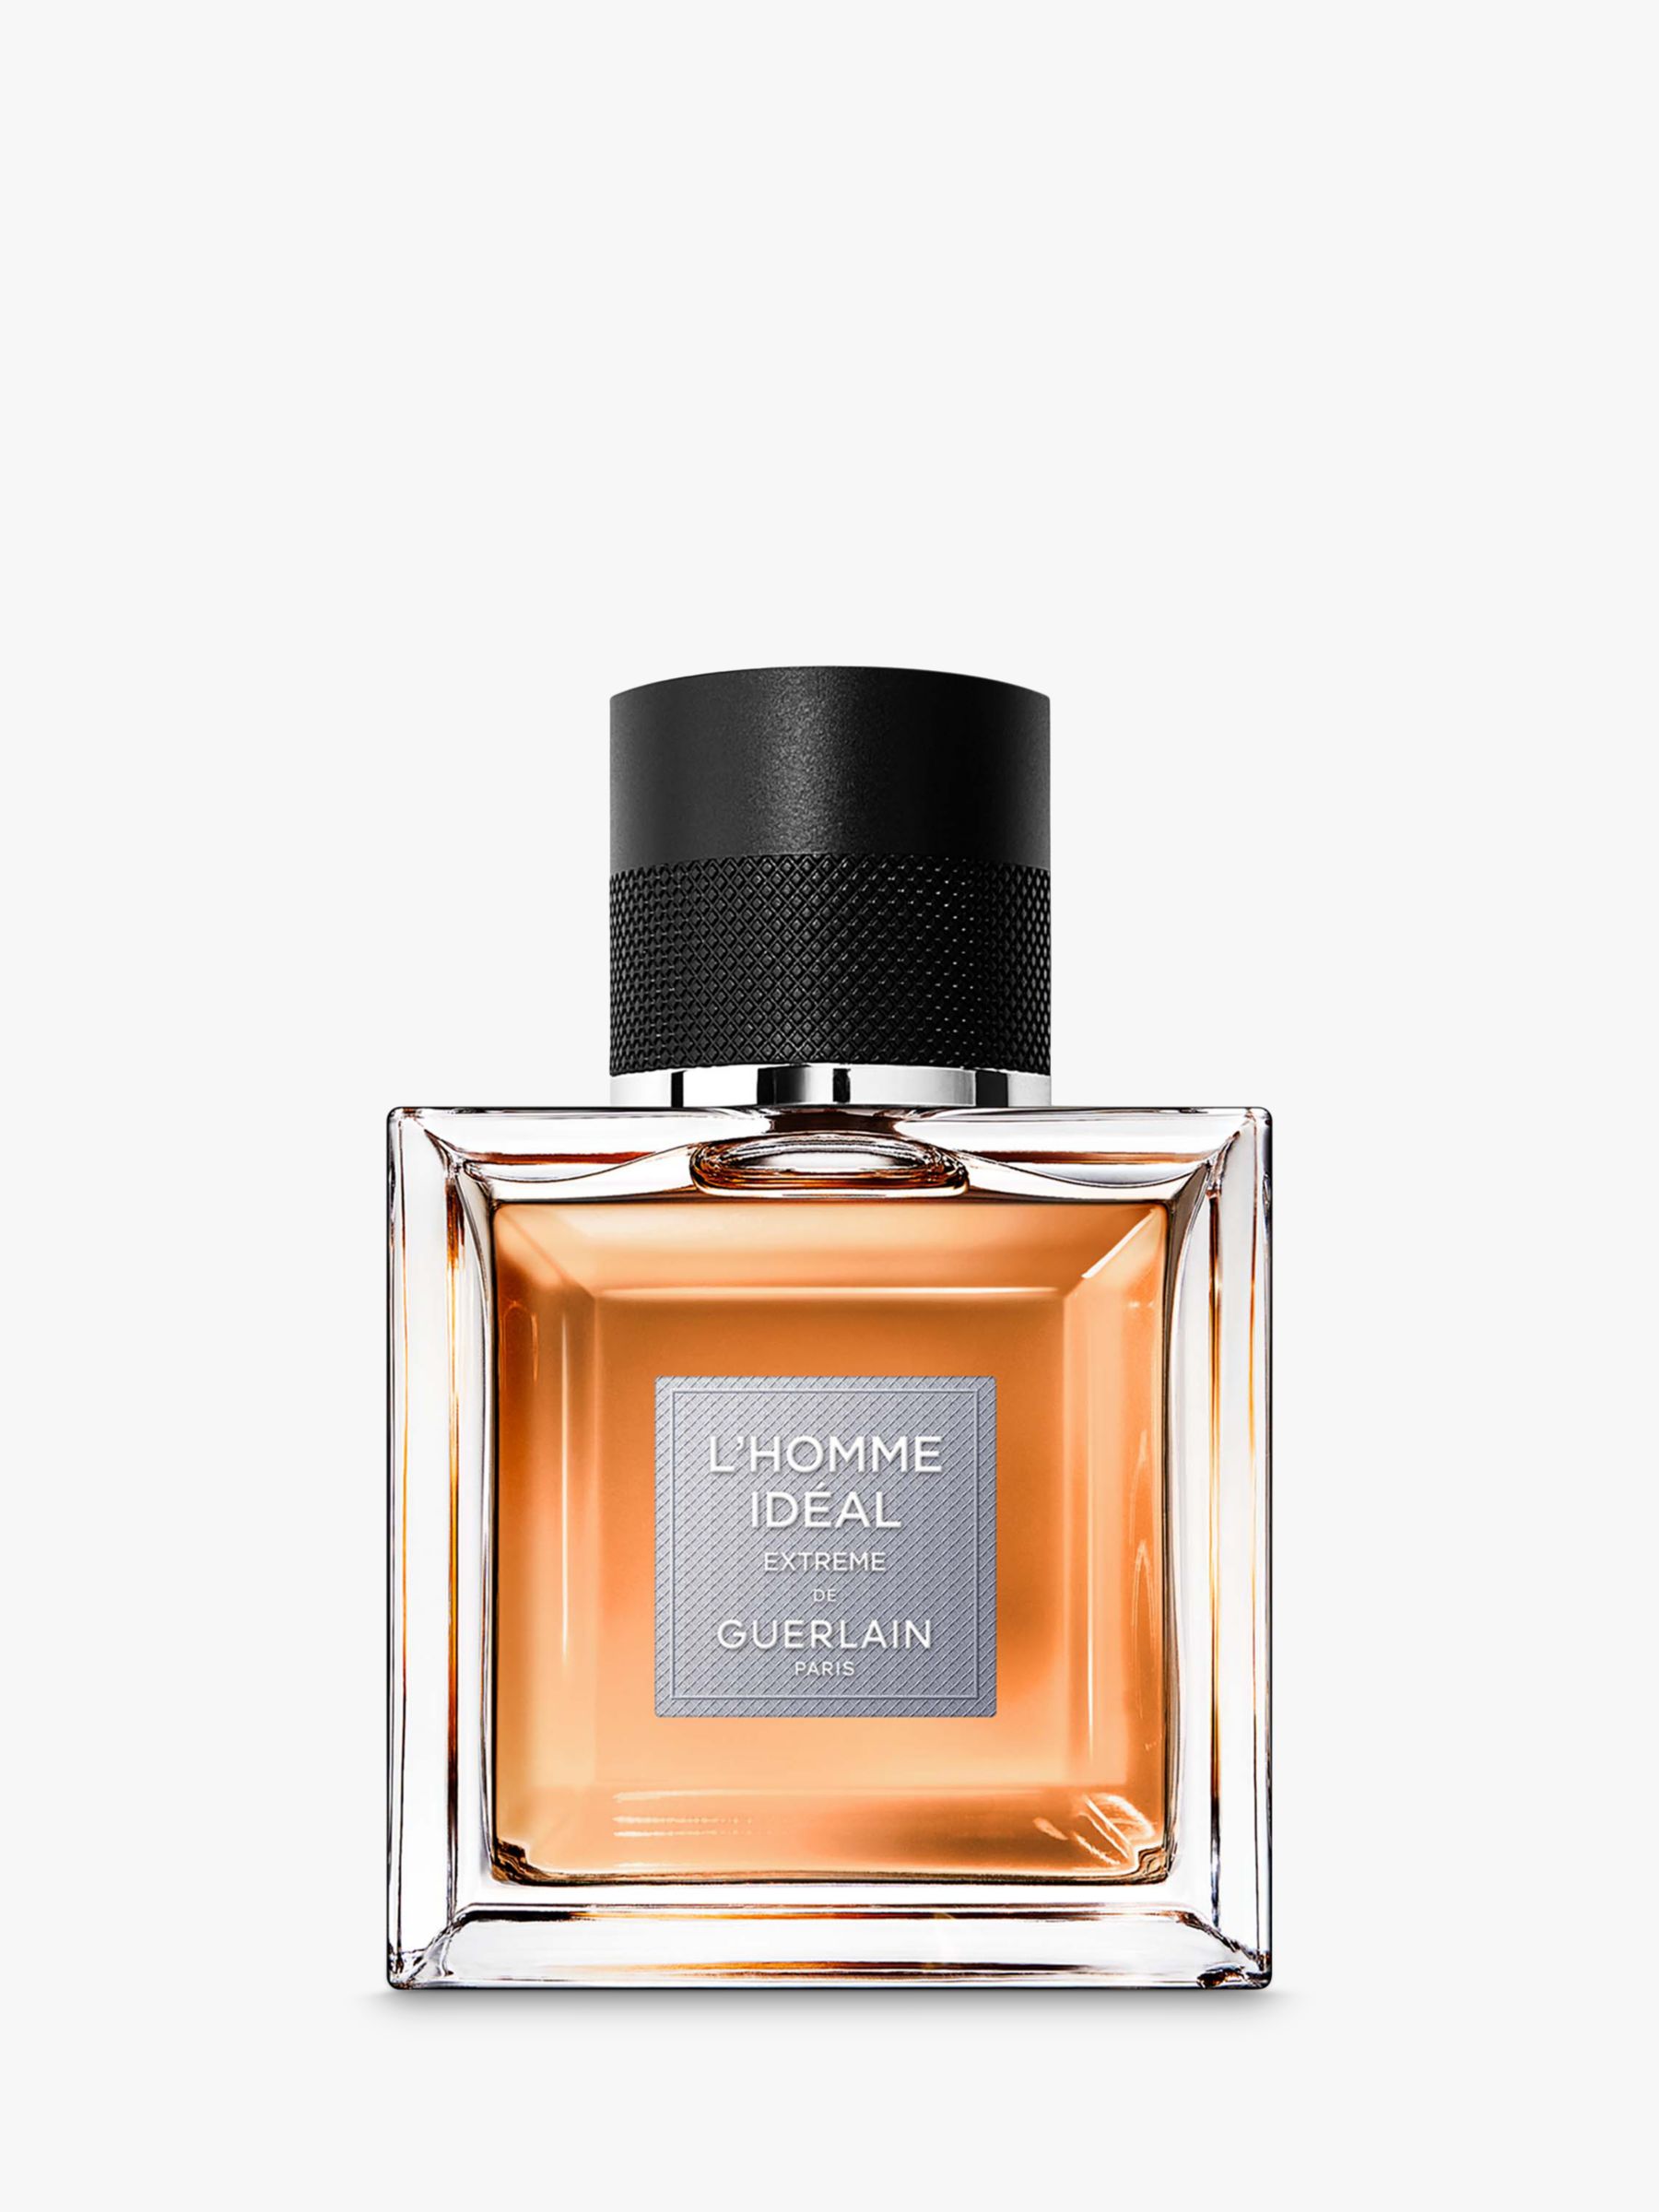 Guerlain L'Homme Idéal Extrême Eau de Parfum, 50ml